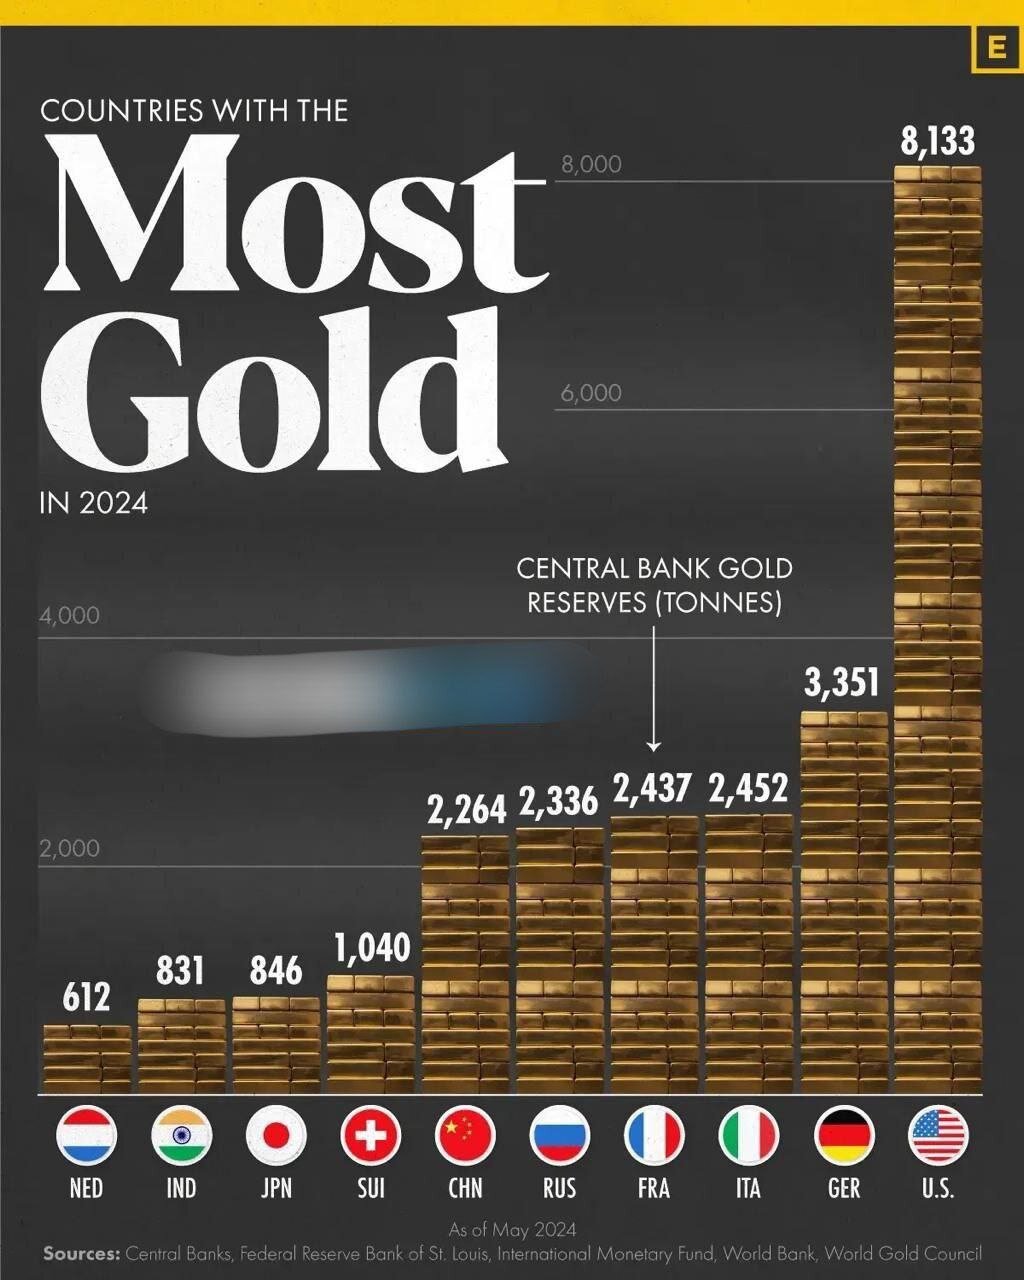 اینفوگرافیک | کشورهای با بالاترین ذخایر طلا؛ آمریکا در رده چندم است؟ اختلاف کشور اول و دوم چقدر است؟